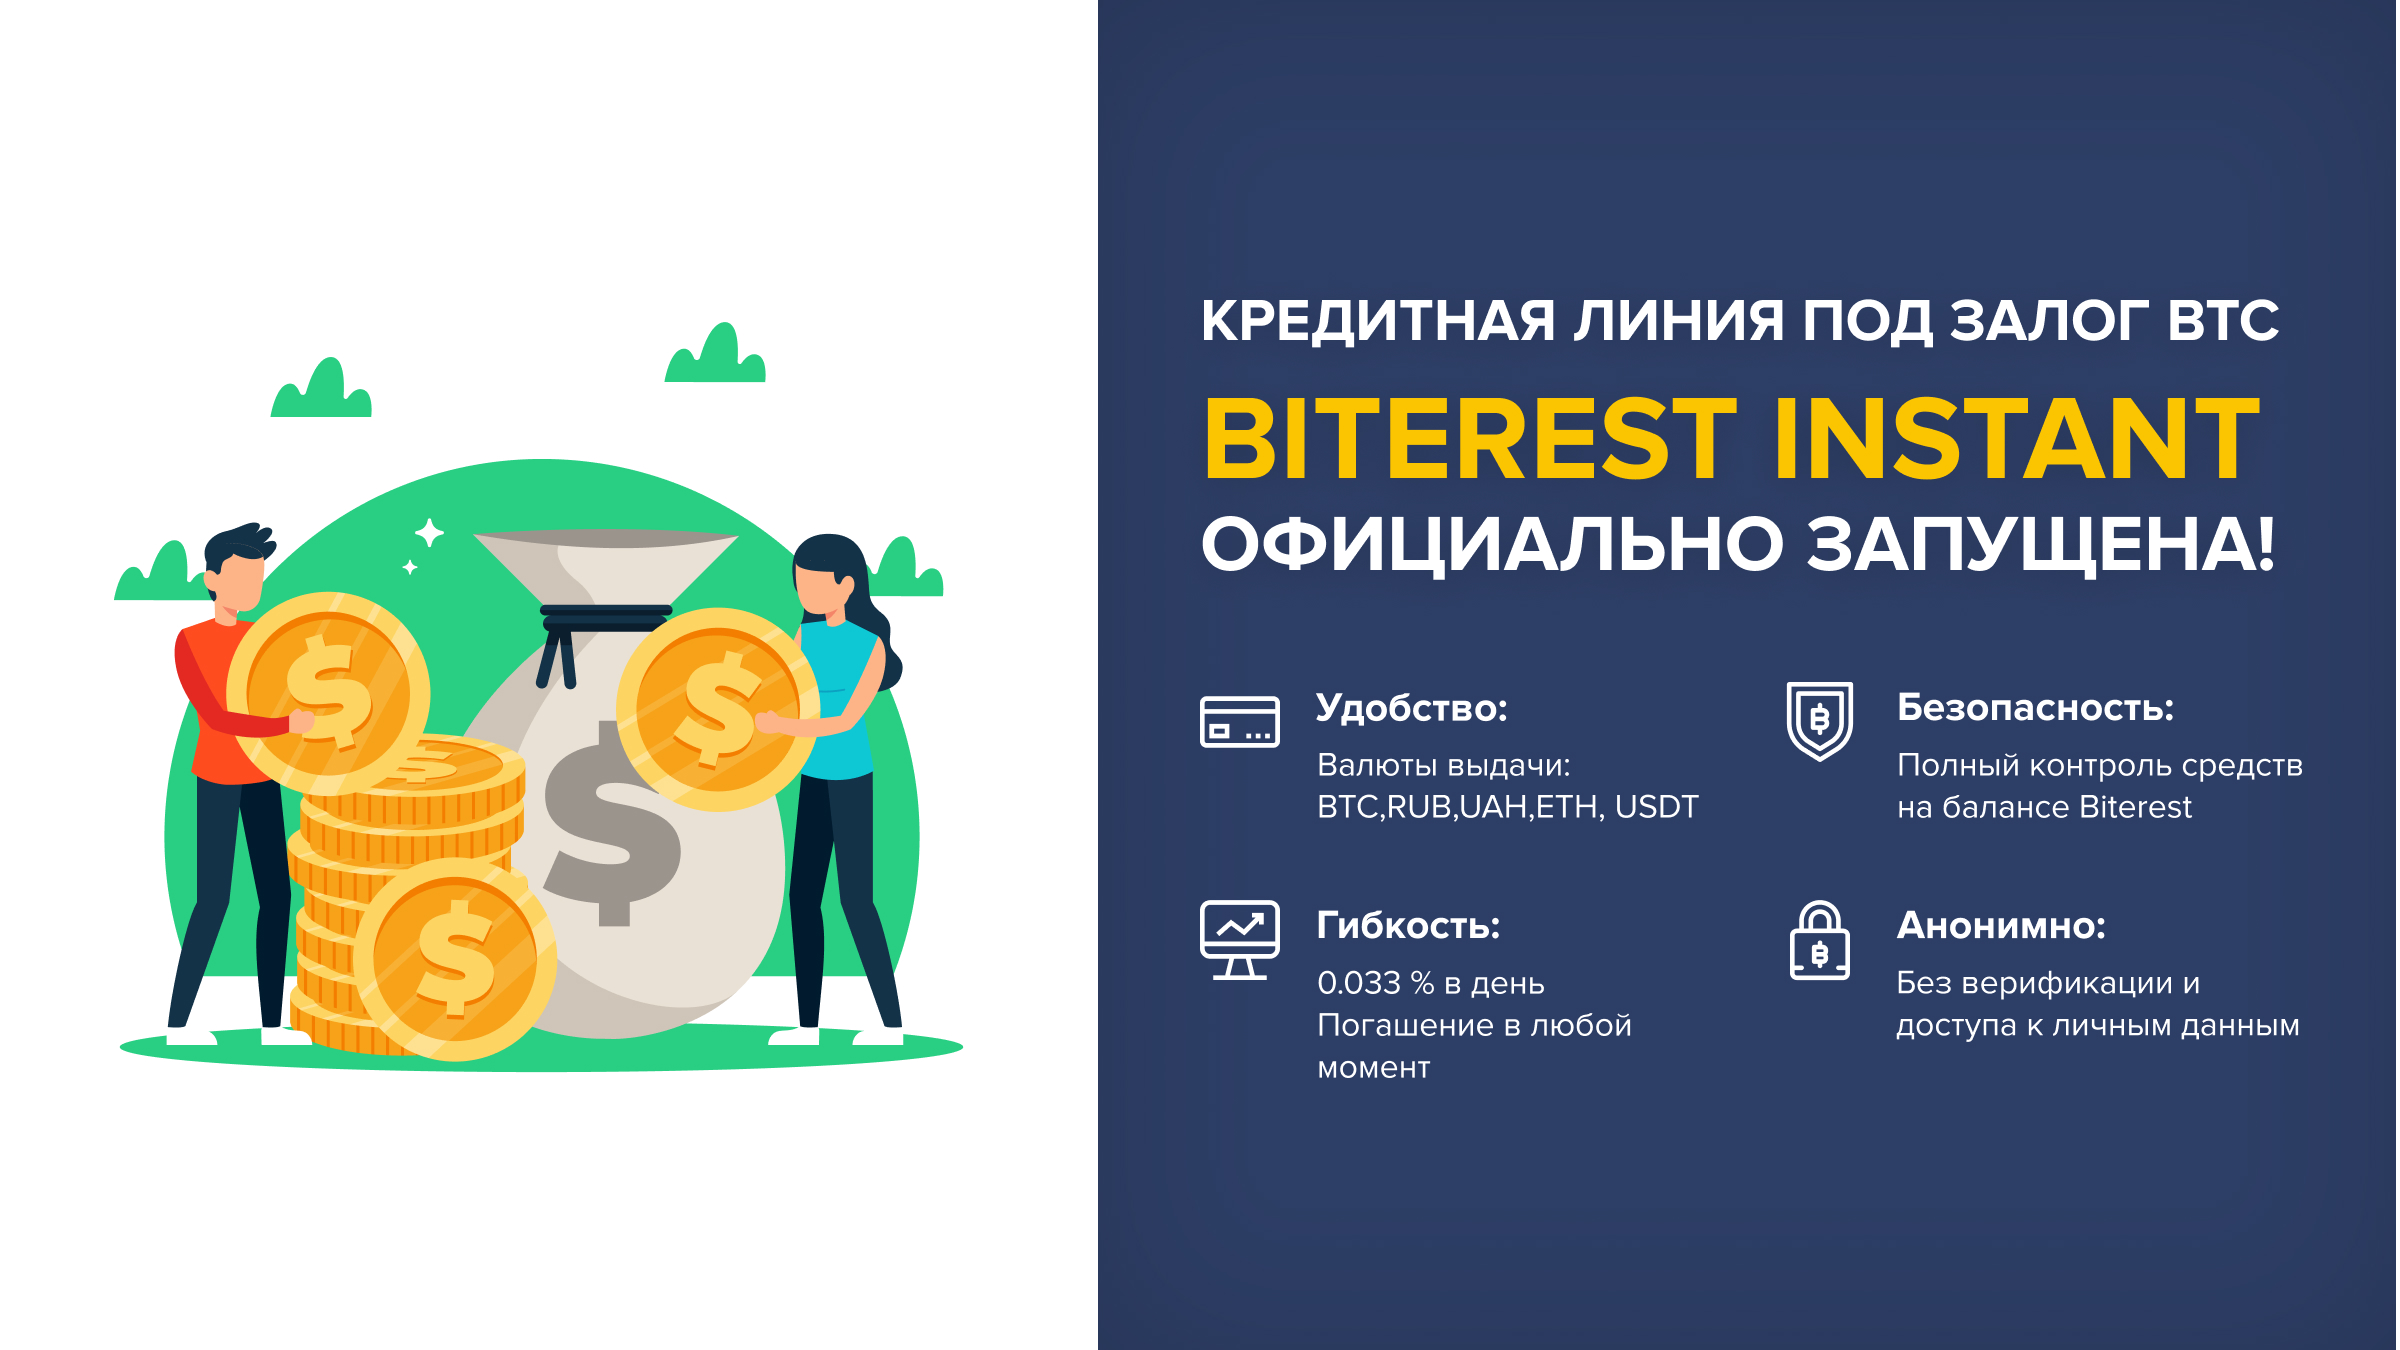 Запущена кредитная линия Biterest для мгновенных кредитов под залог BTC